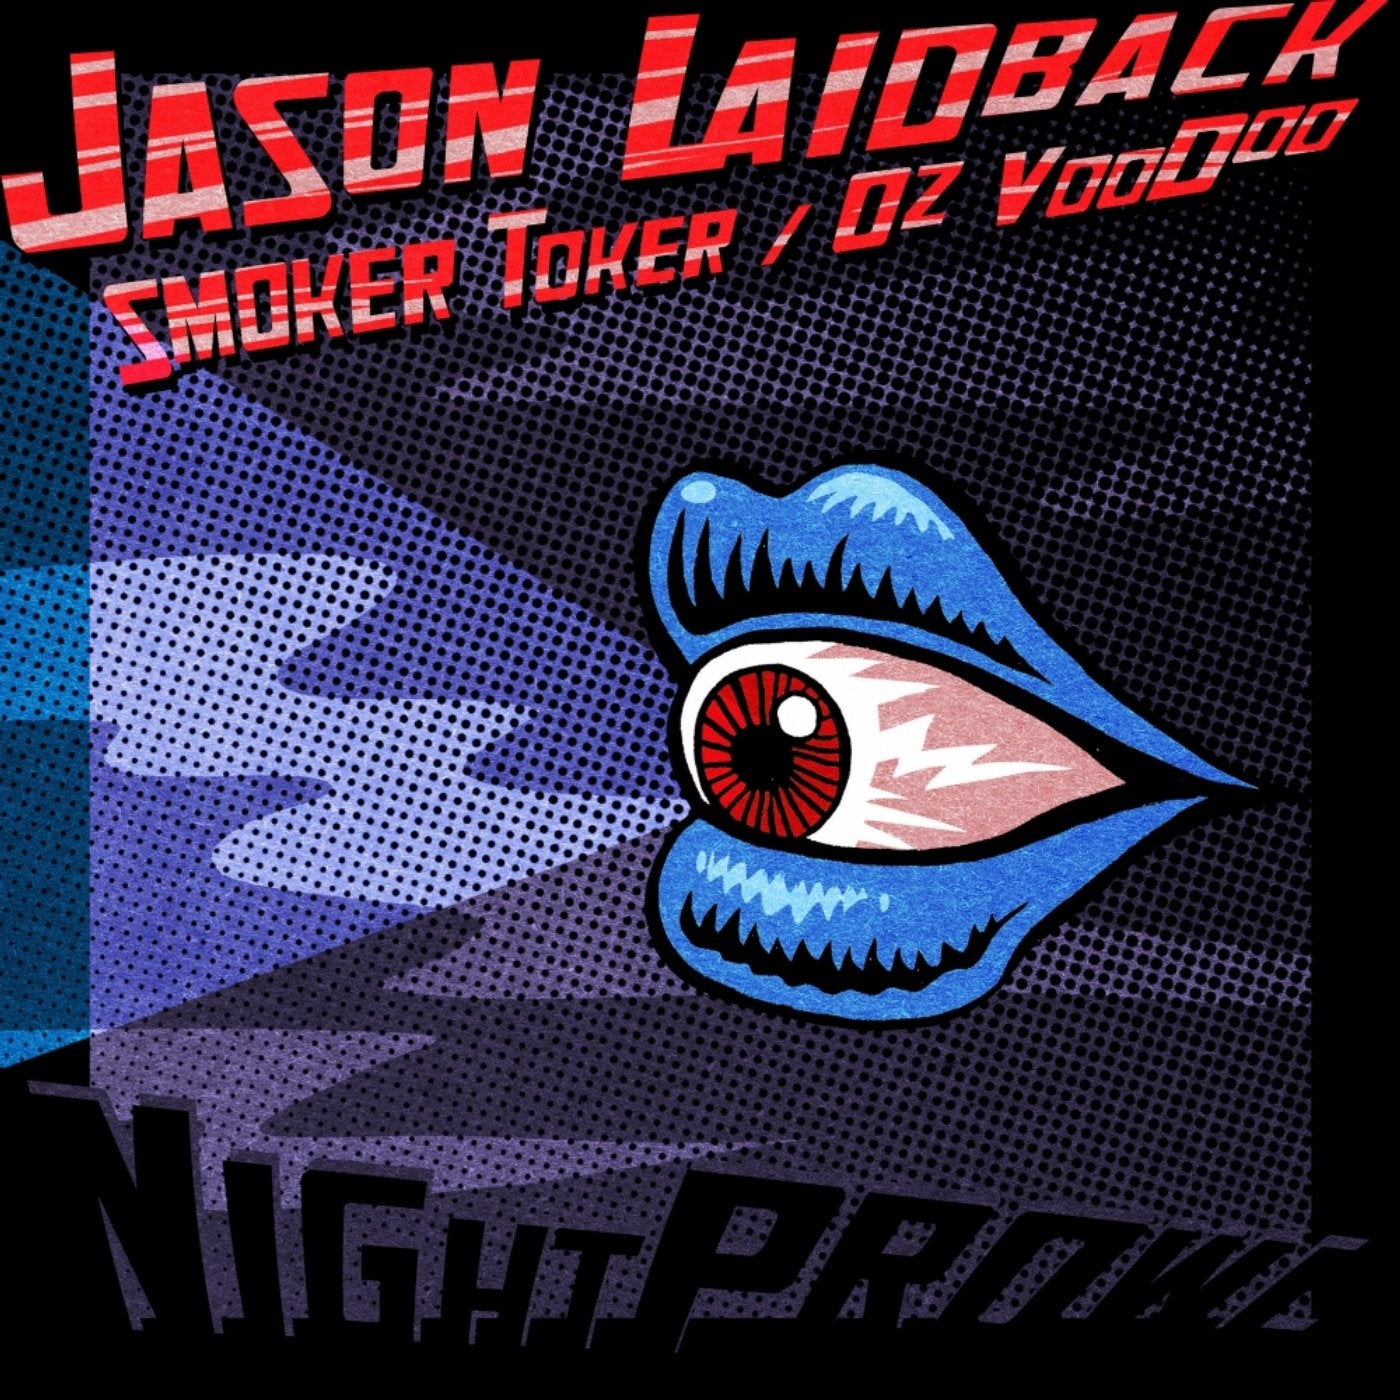 Smoker Toker / Oz Voodoo